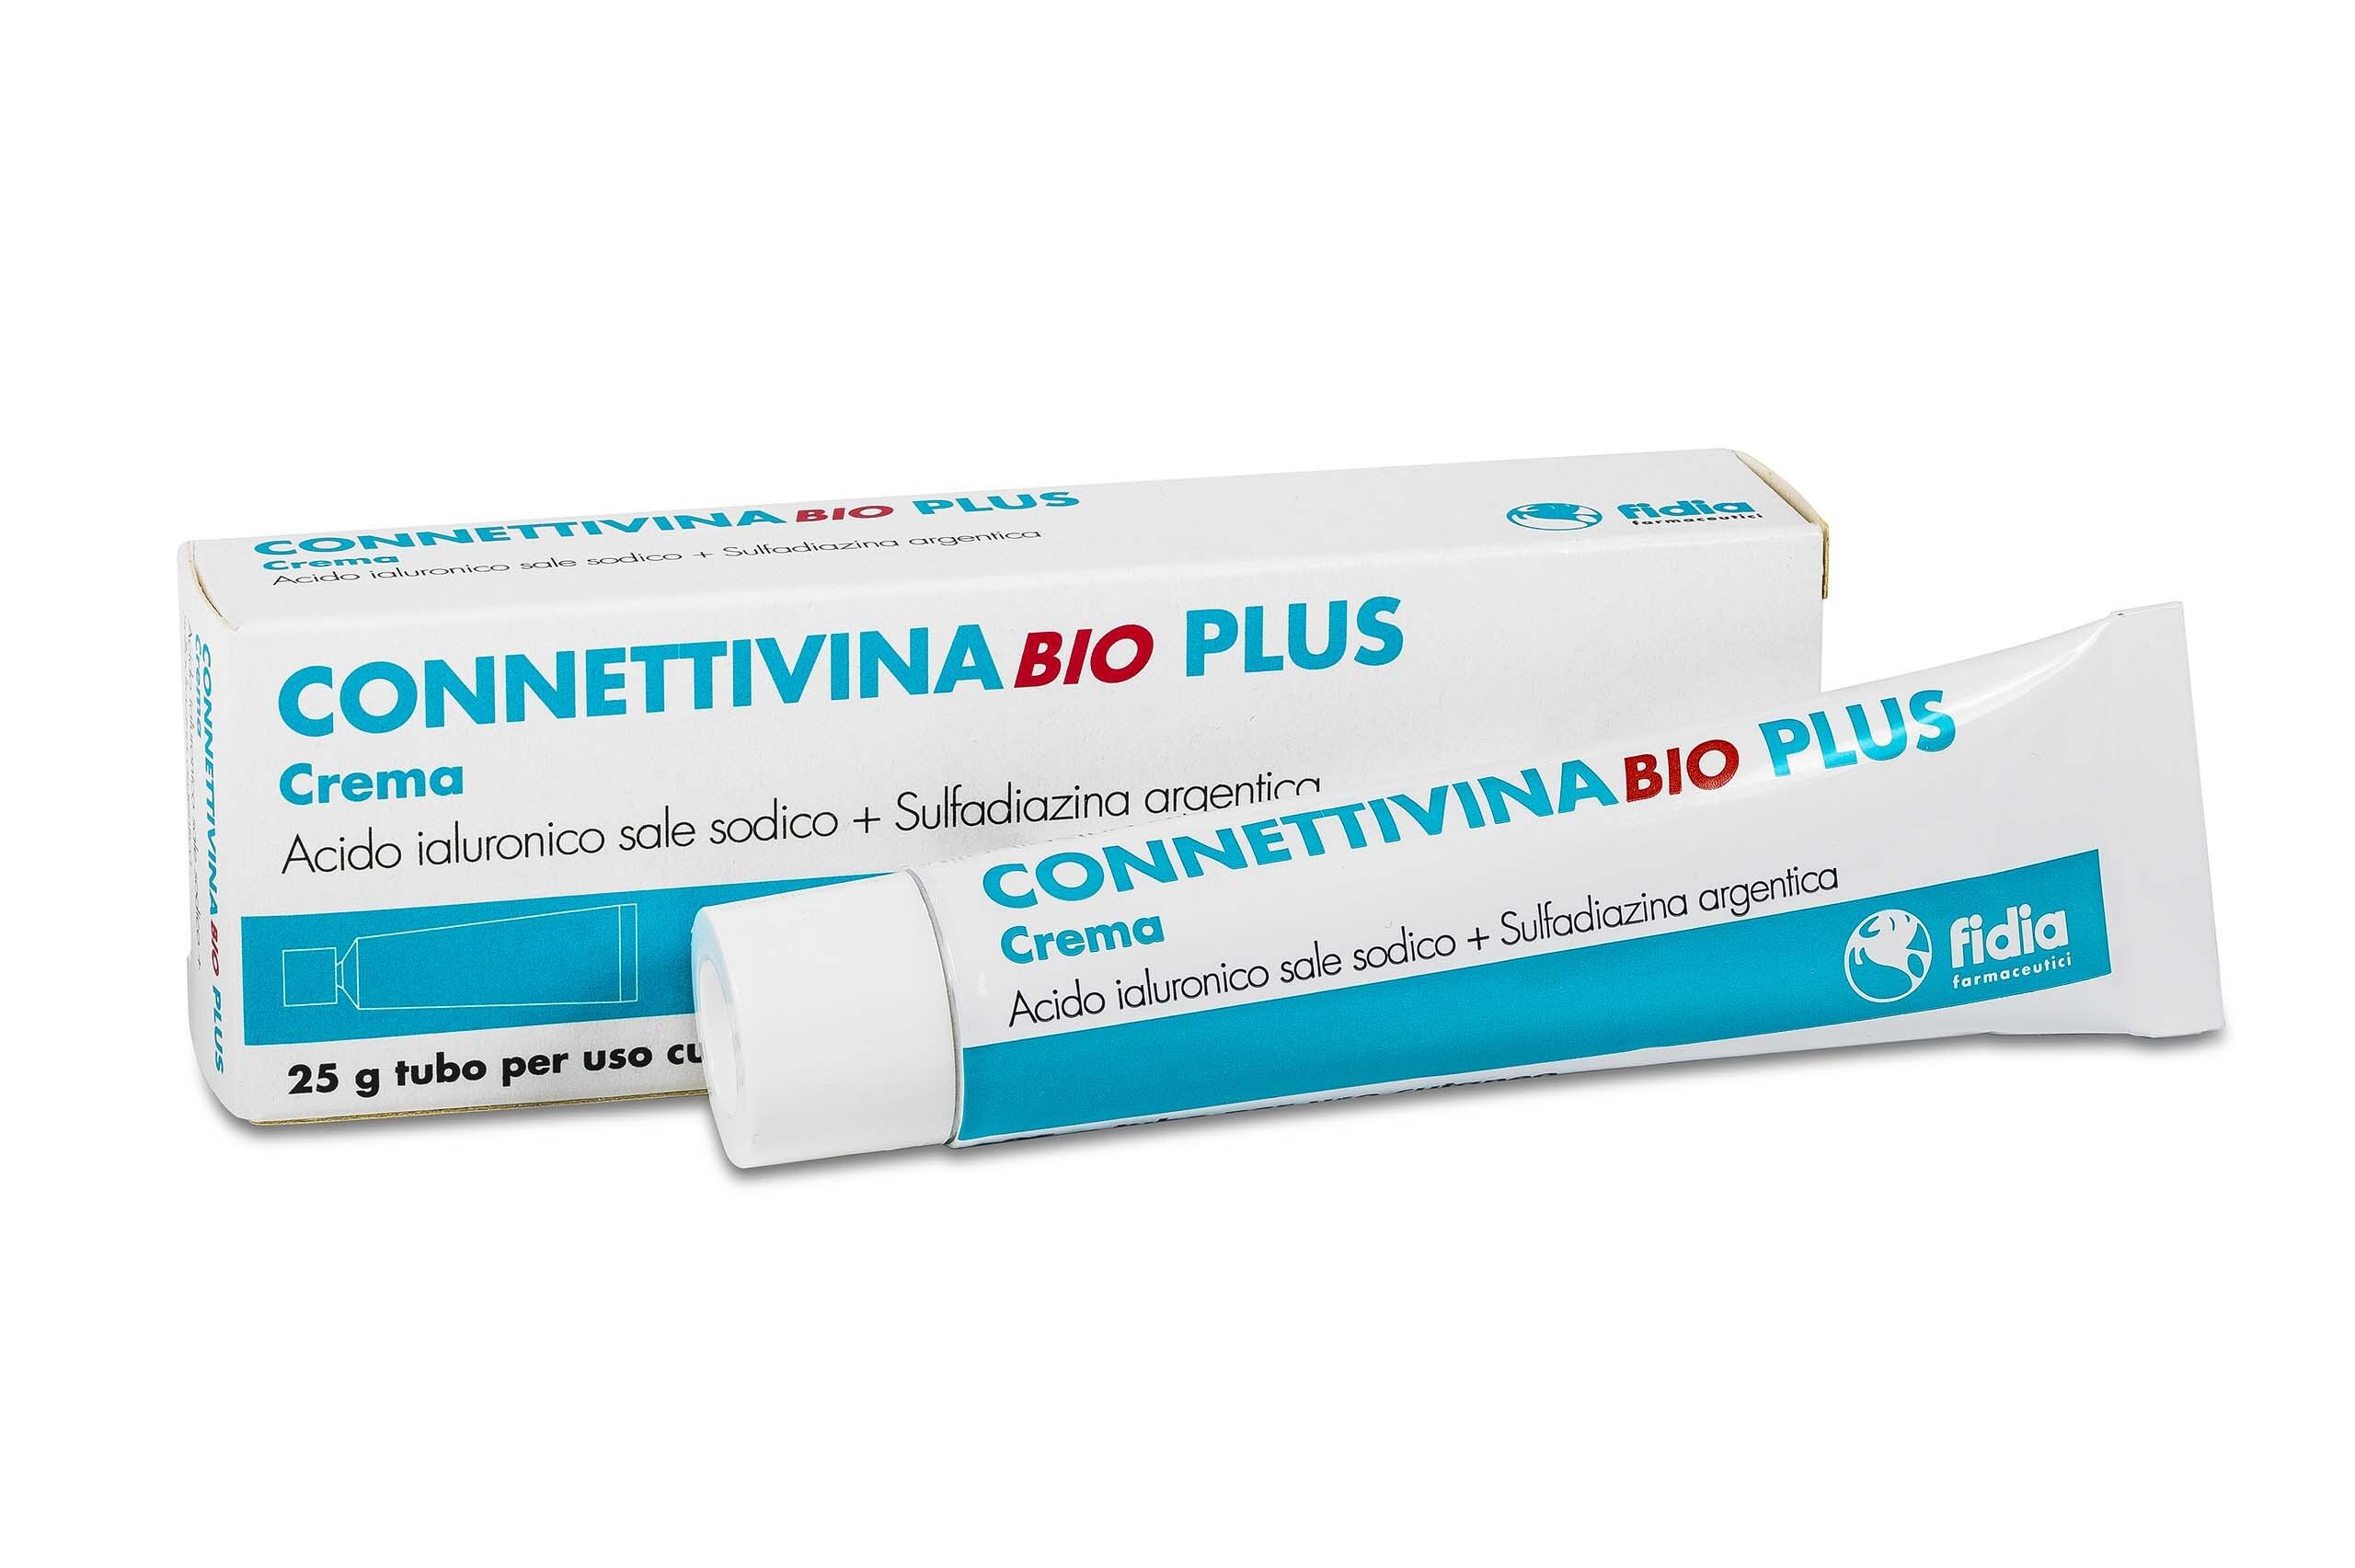 BIO + Fidia Connettivina Bio Plus Crema 25g Trattamento Avanzato per Irritazioni Cutanee e Lesioni